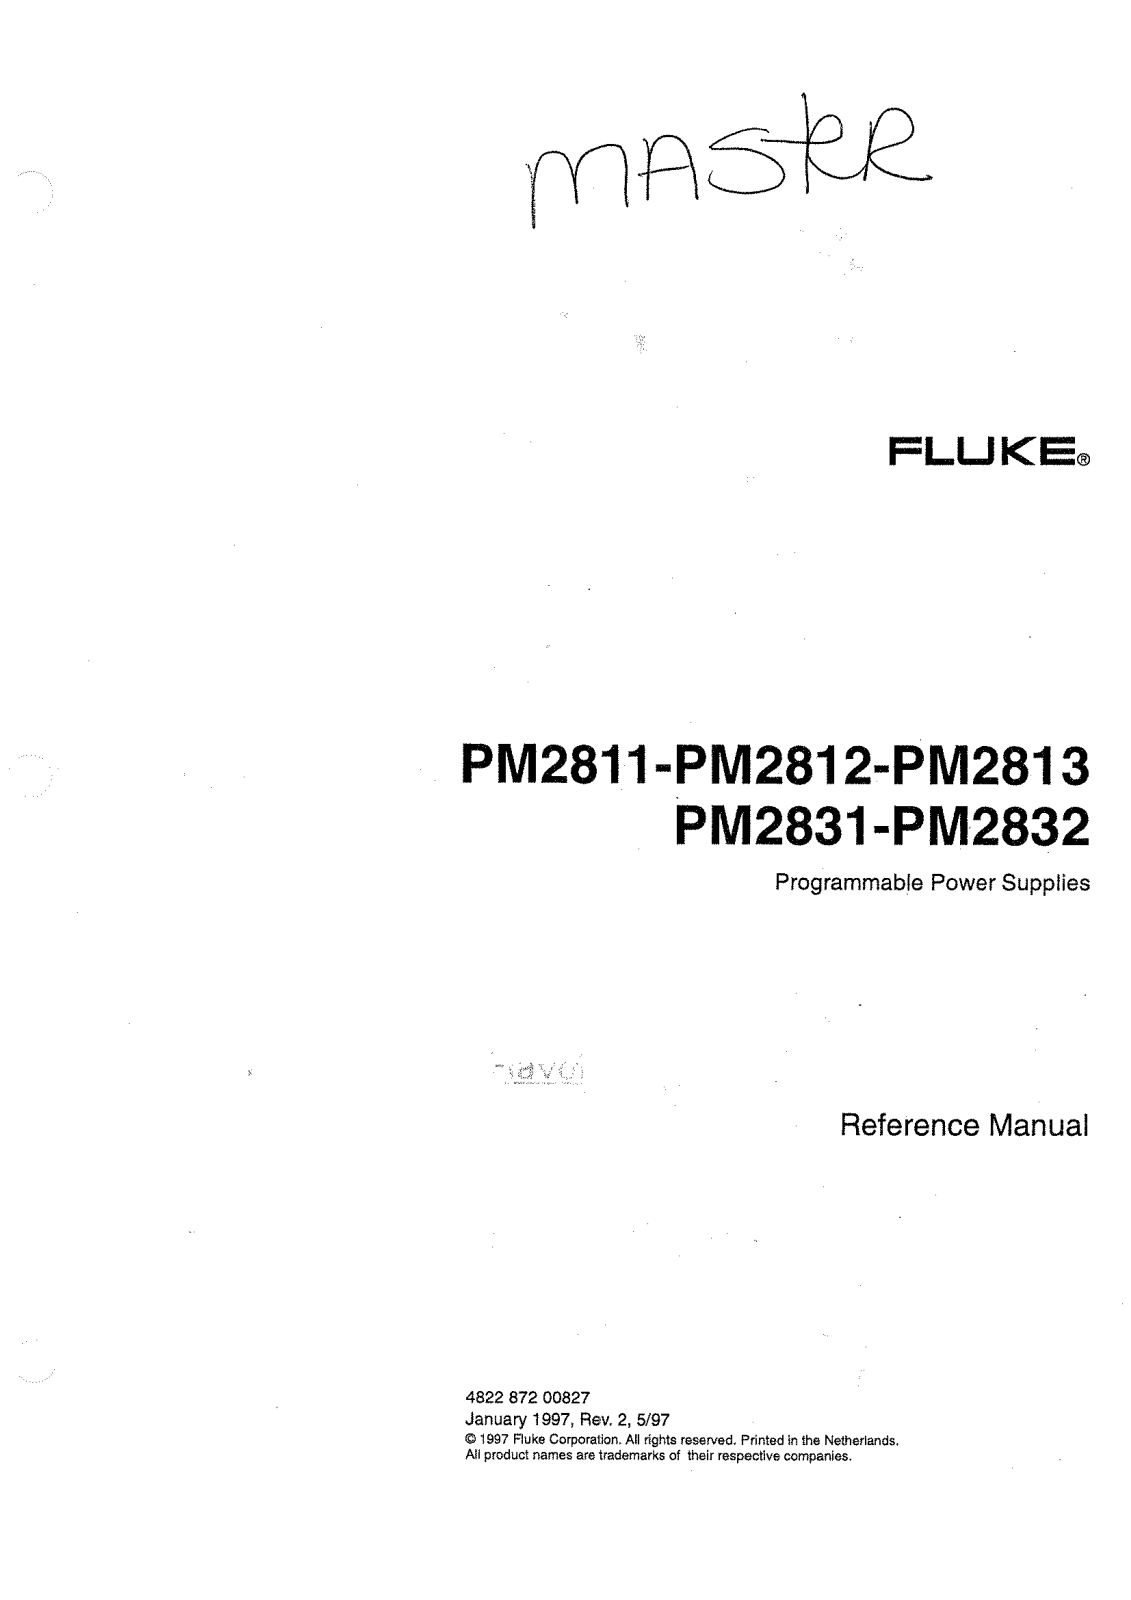 Fluke PM2832, PM2831, PM2813, PM2812, PM2811 Service Manual